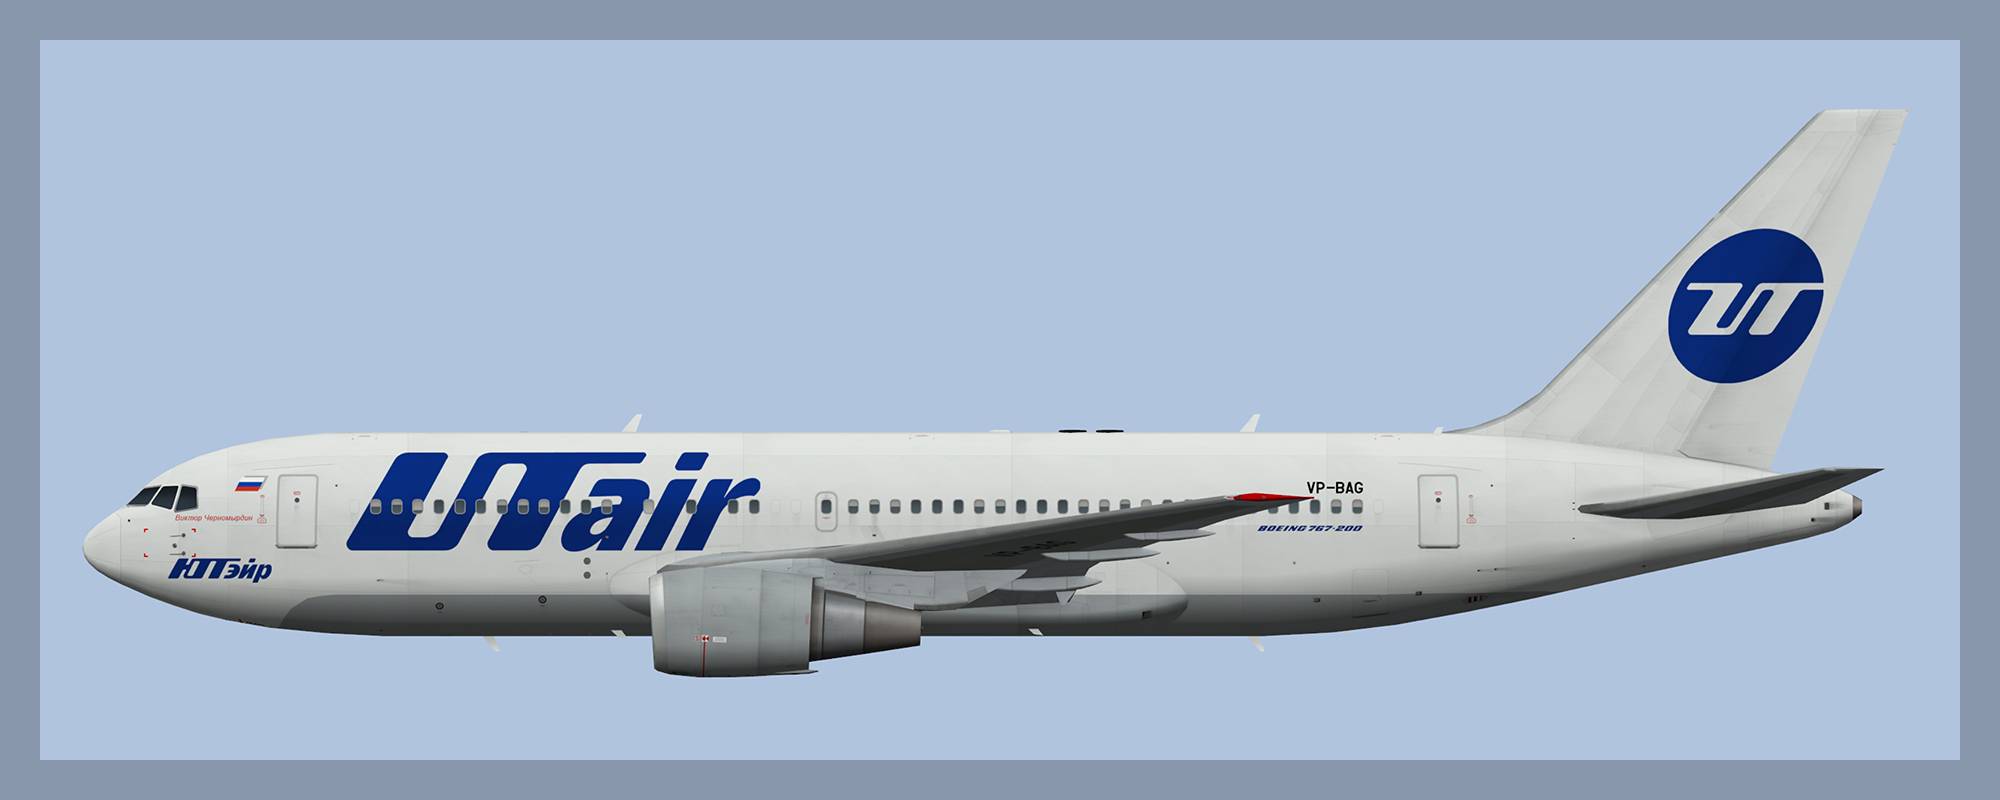 Боинг 767 200 ютэйр: схема салона